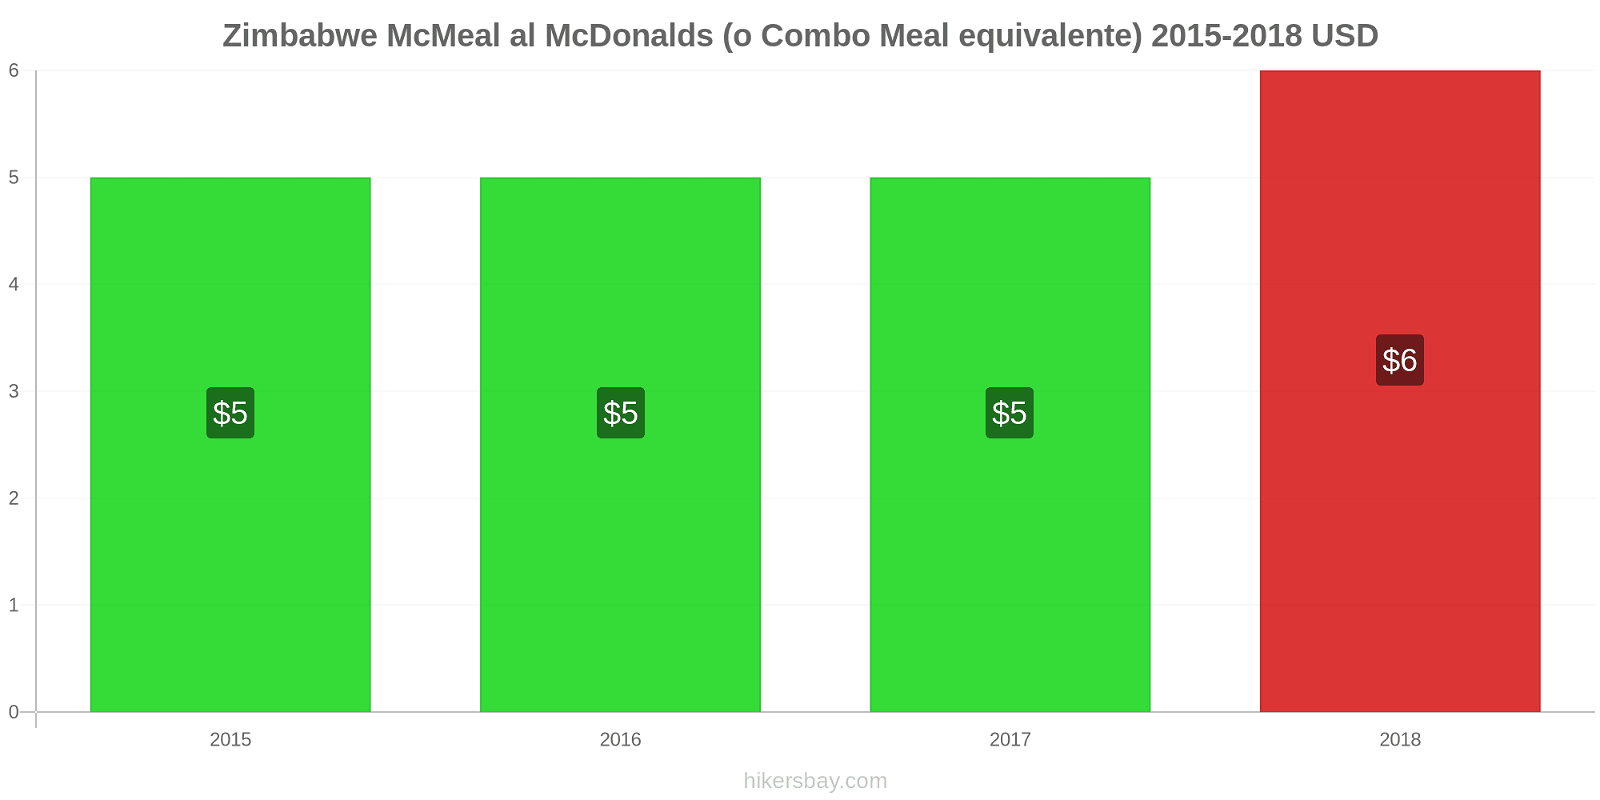 Zimbabwe variazioni di prezzo McMeal al McDonalds (o in un equivalente fastfood) hikersbay.com